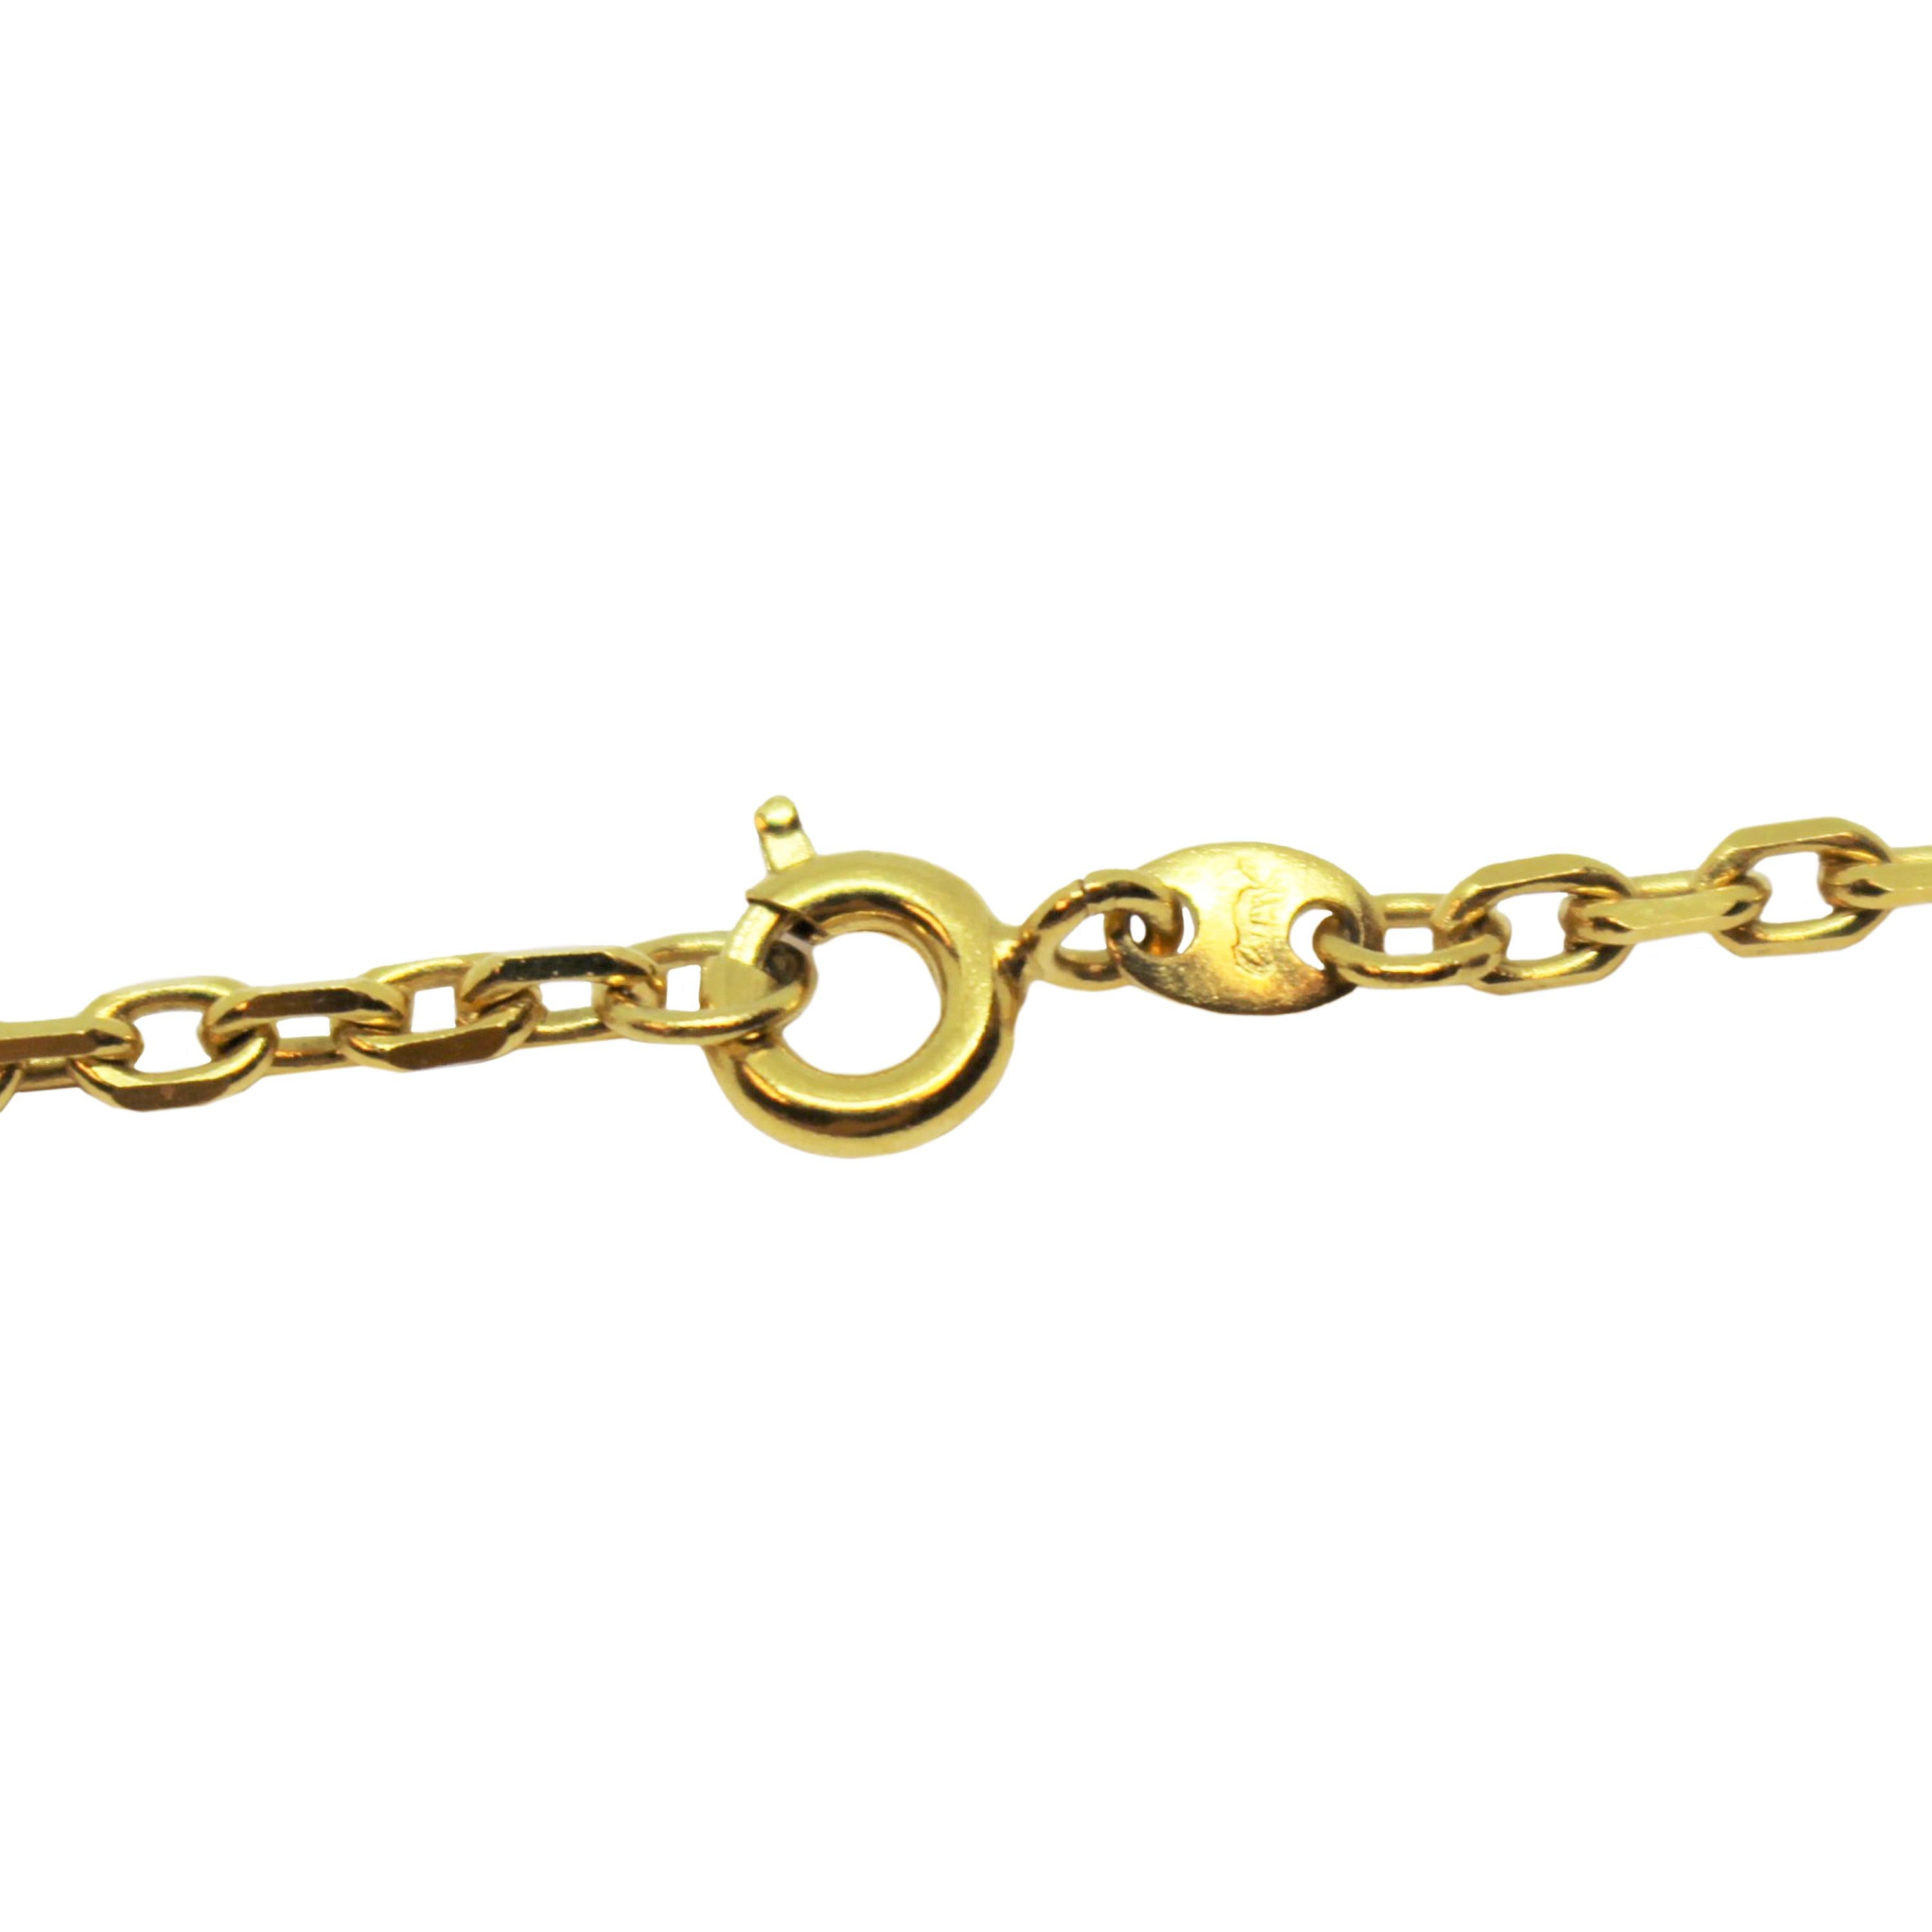 Luis Masriera Art Nouveau Gold and Enamel Necklace Brooch 1